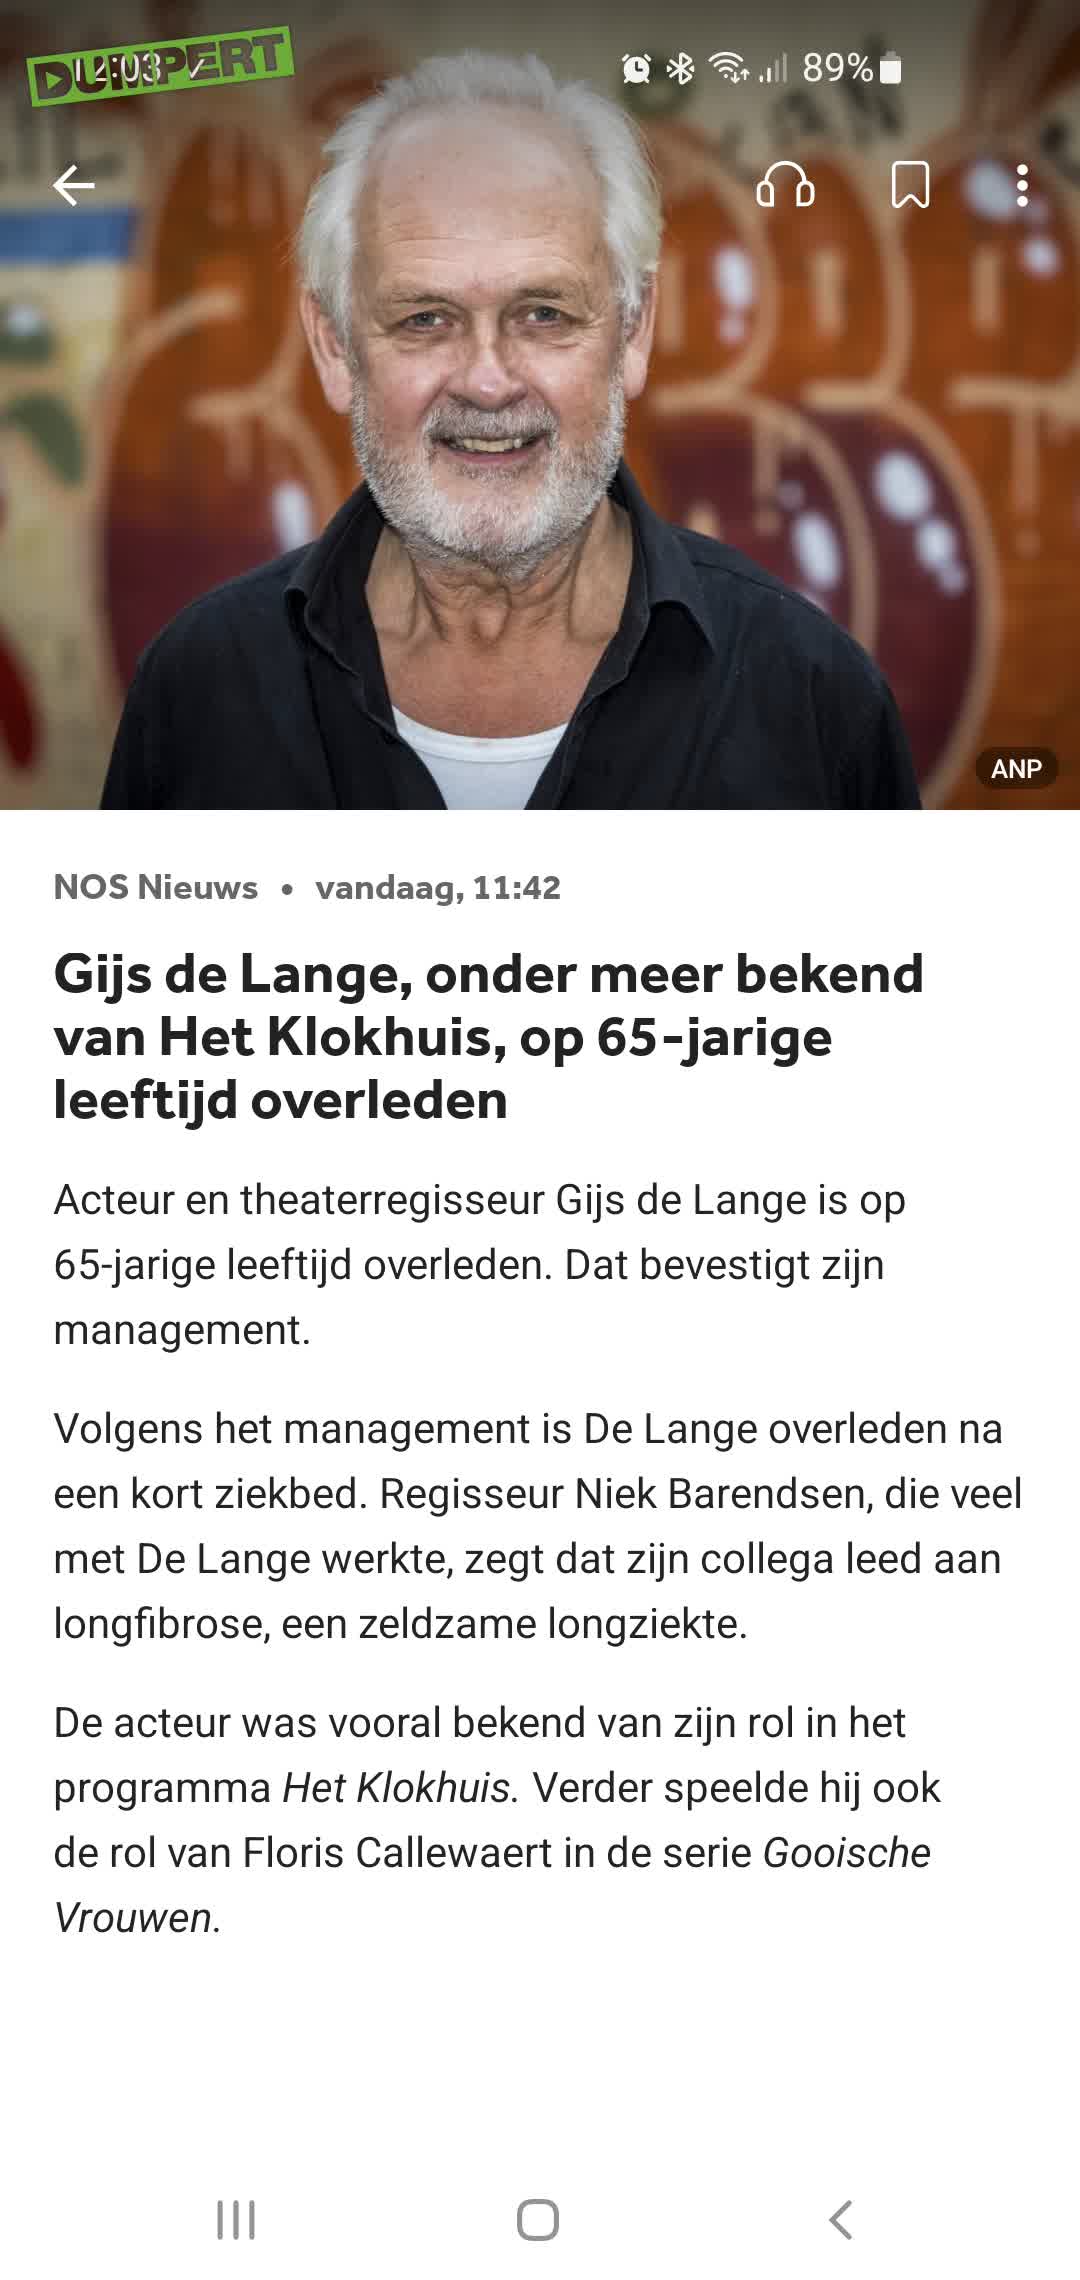 Gijs de Lange op 65-jarige leeftijd overleden.